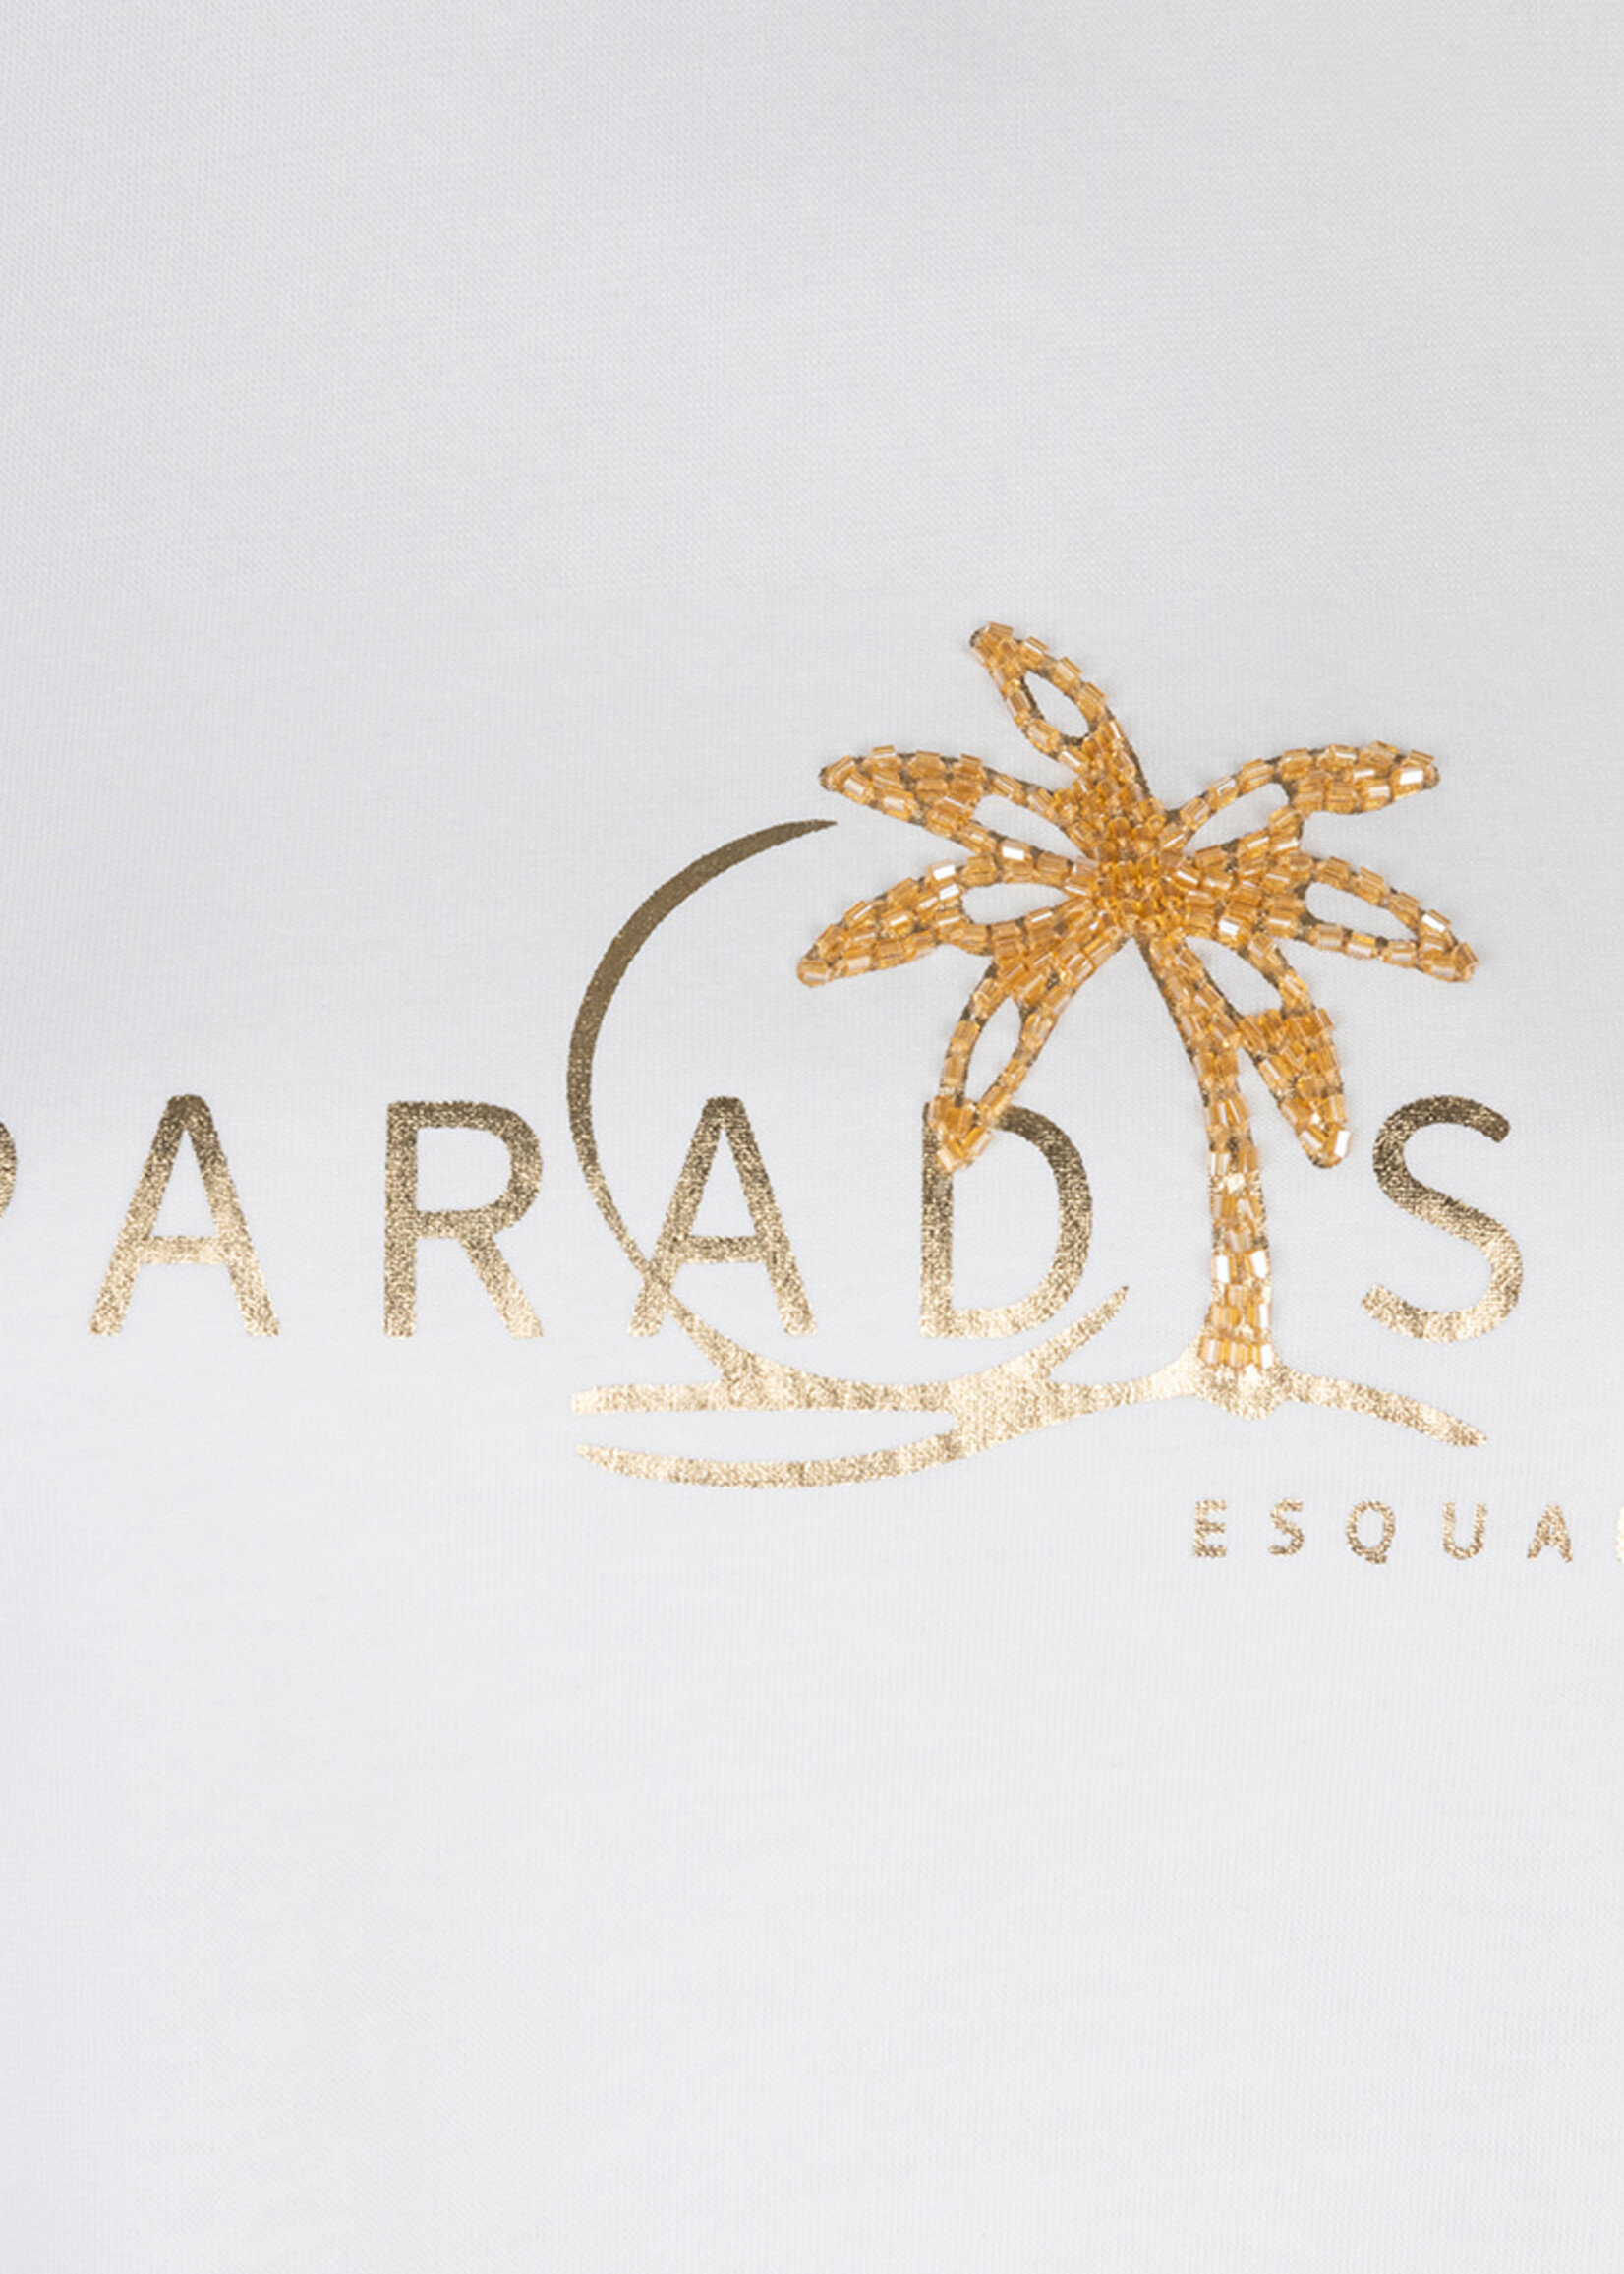 EsQualo T-shirt paradise offwhite gold 05202